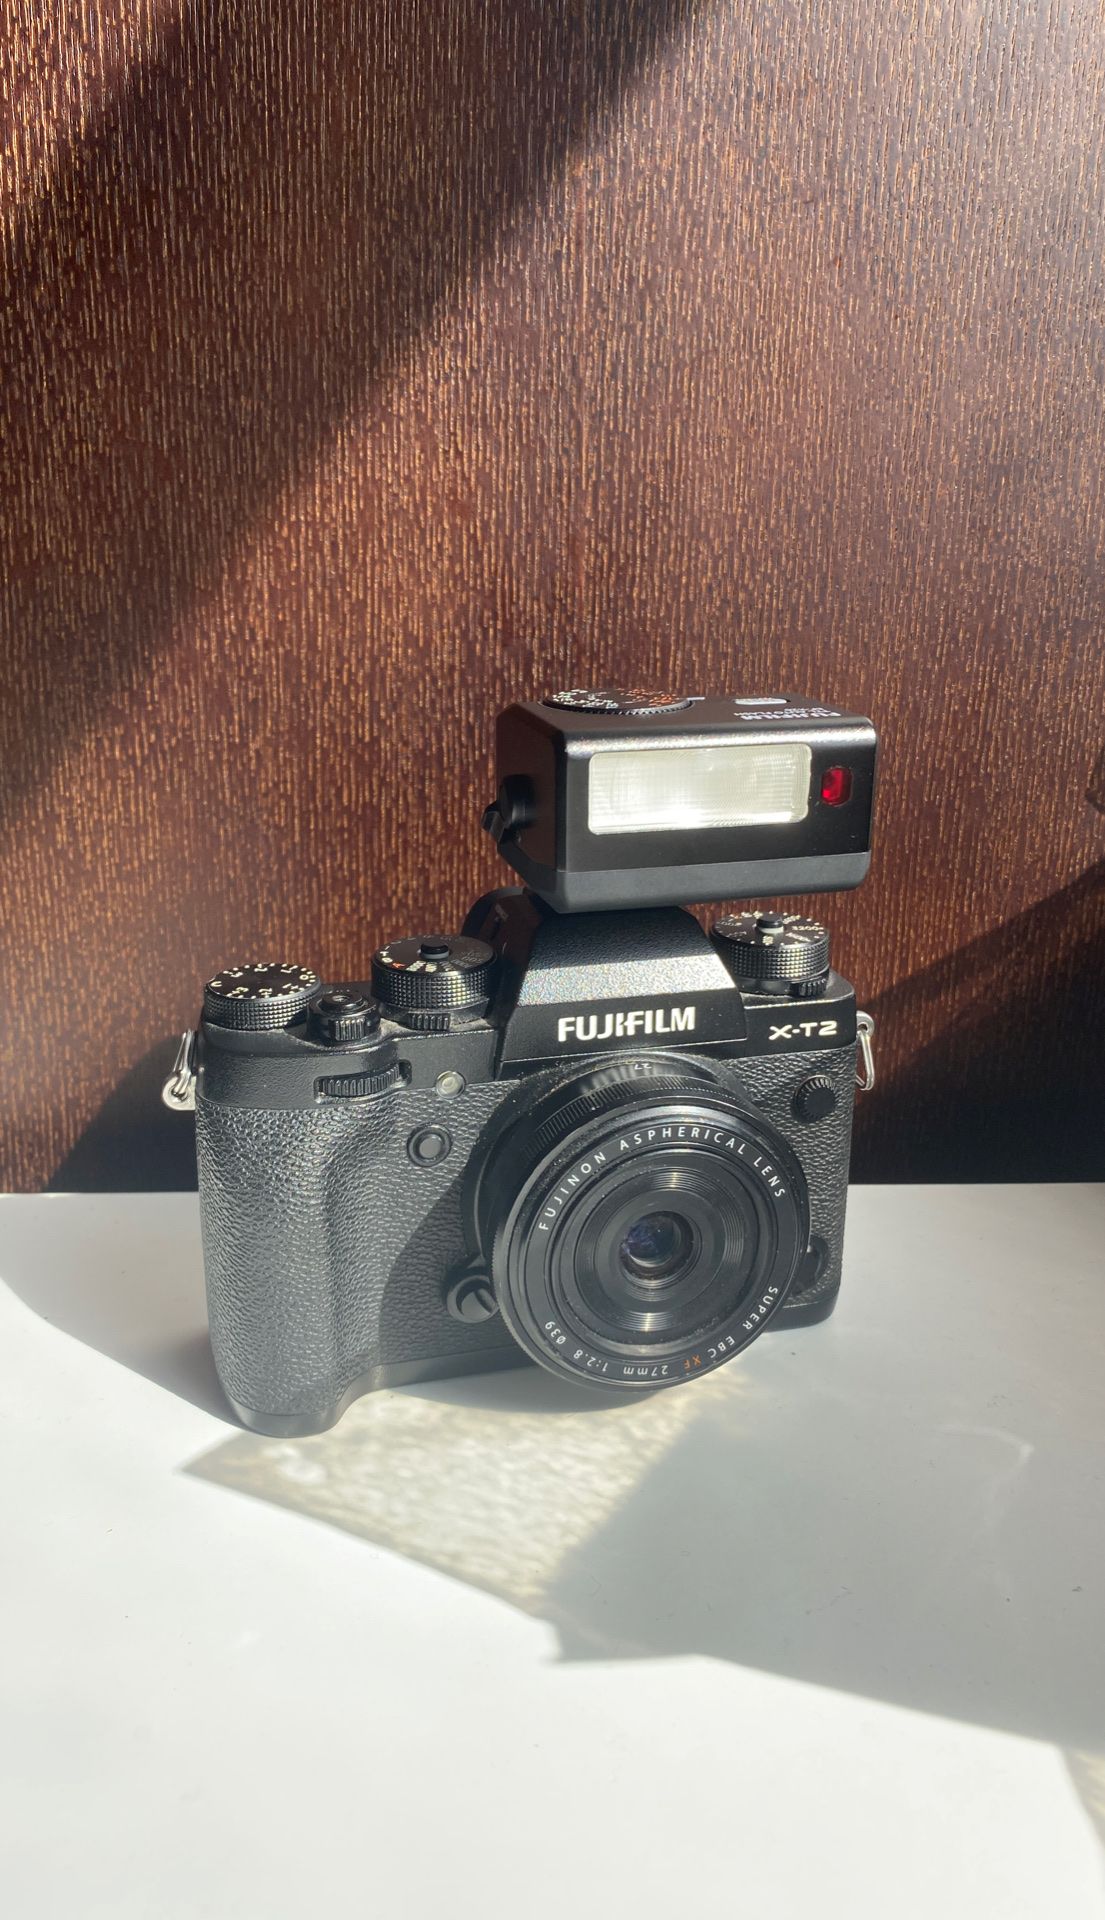 Fujifilm x-t2 + 27mm lens + extras TRADE